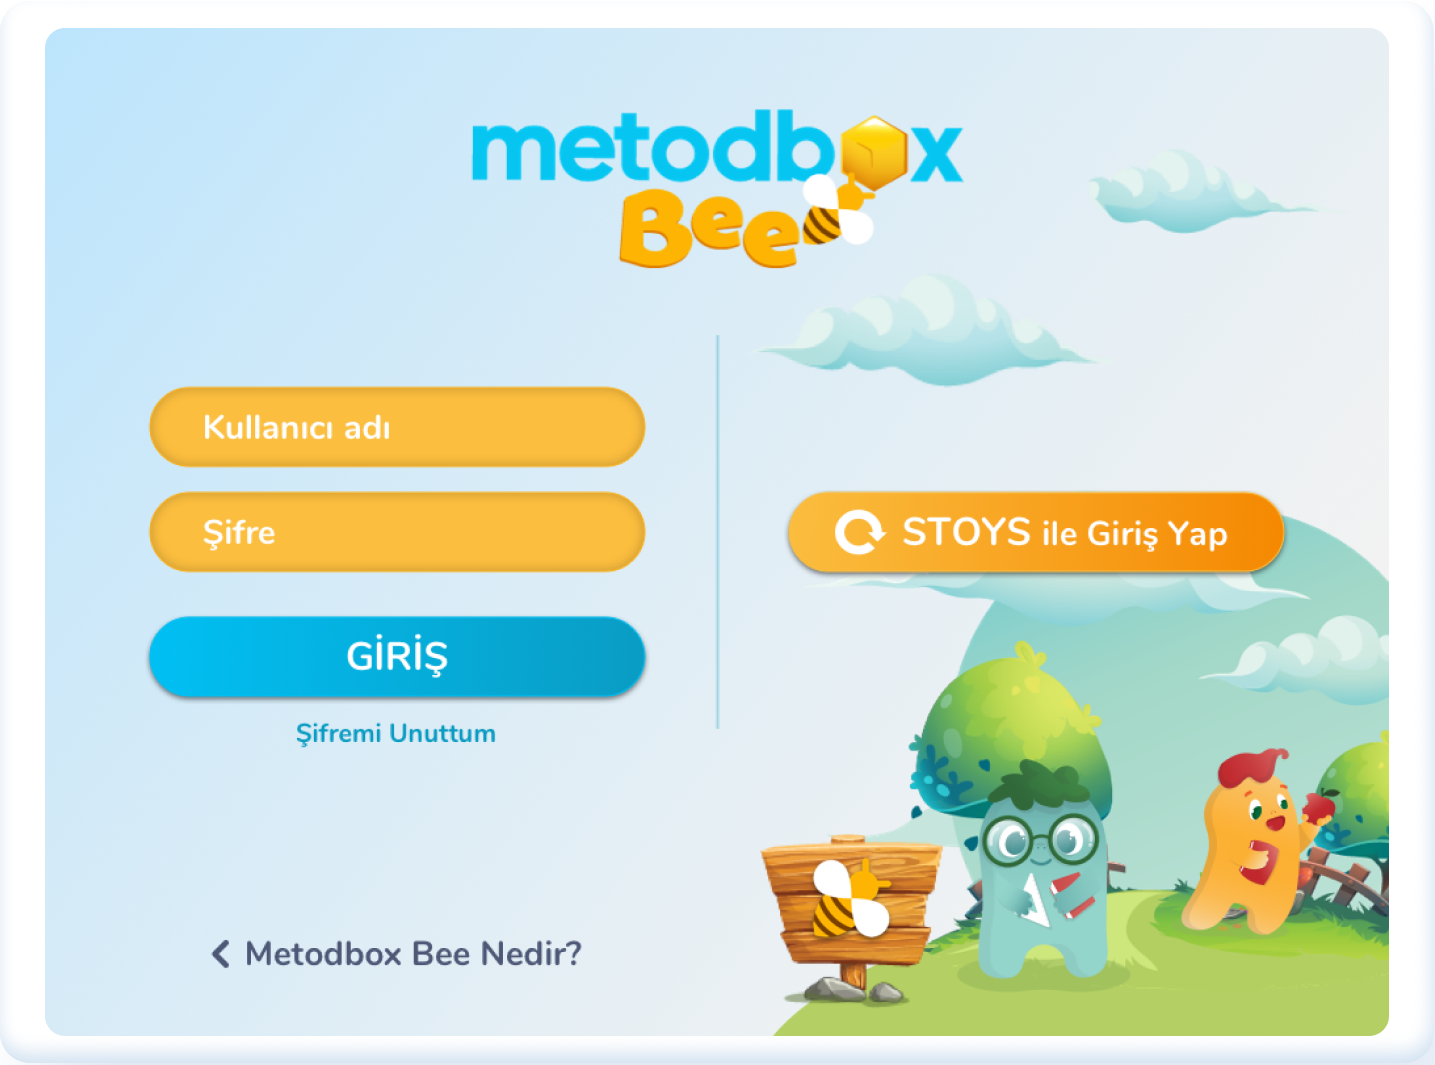 Metodbox Bee